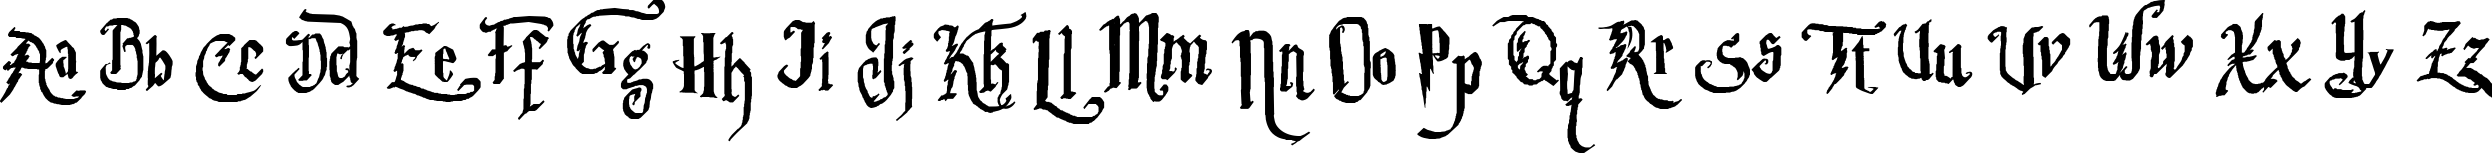 Пример написания английского алфавита шрифтом Parry Hotter